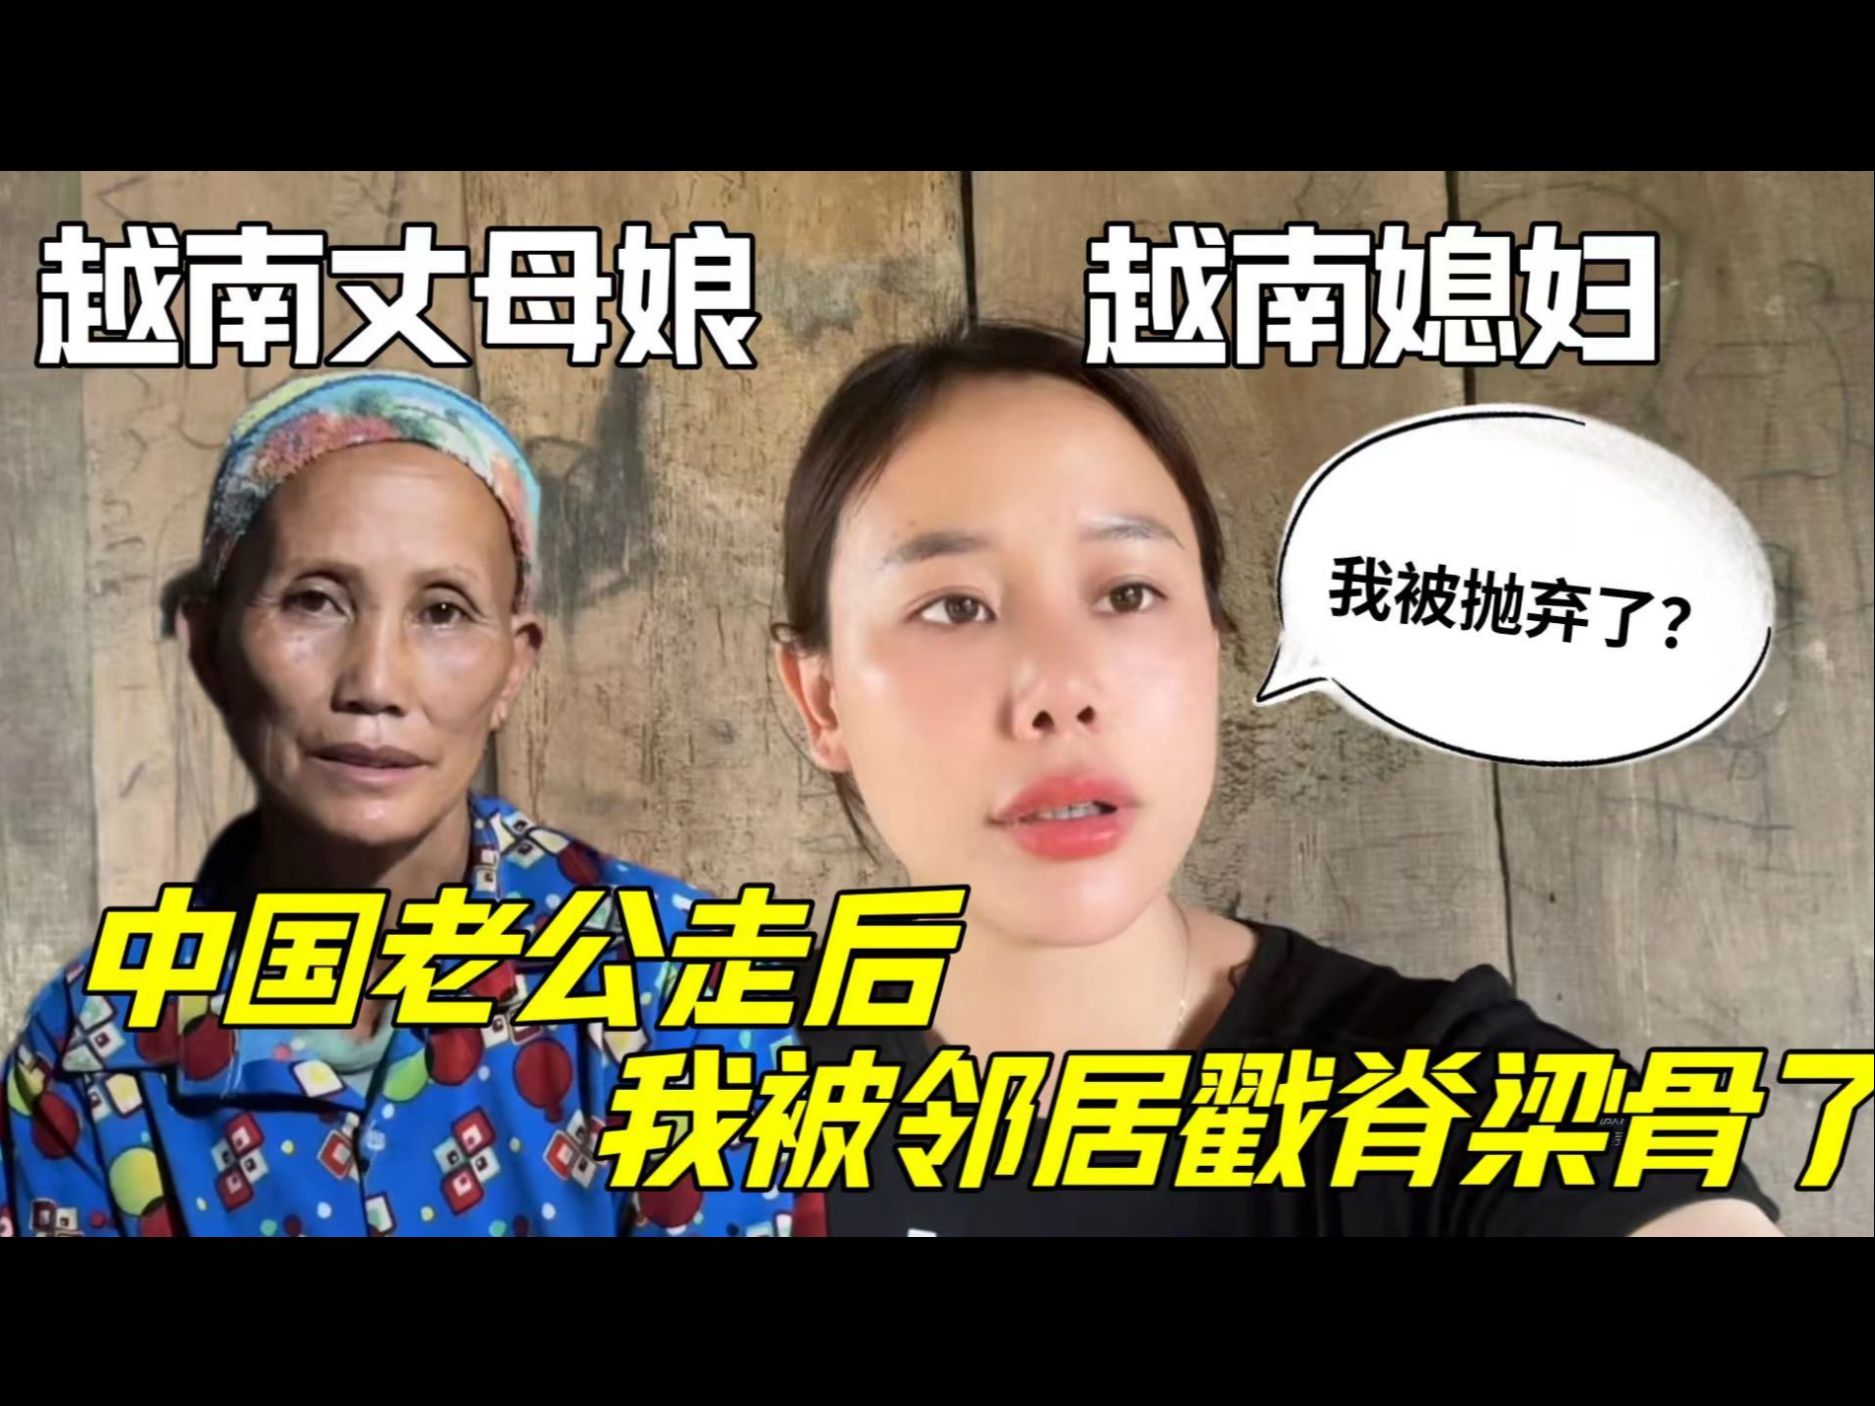 中国女婿刚回国,越南媳妇立马被全村说闲话:这么快就被抛弃了?